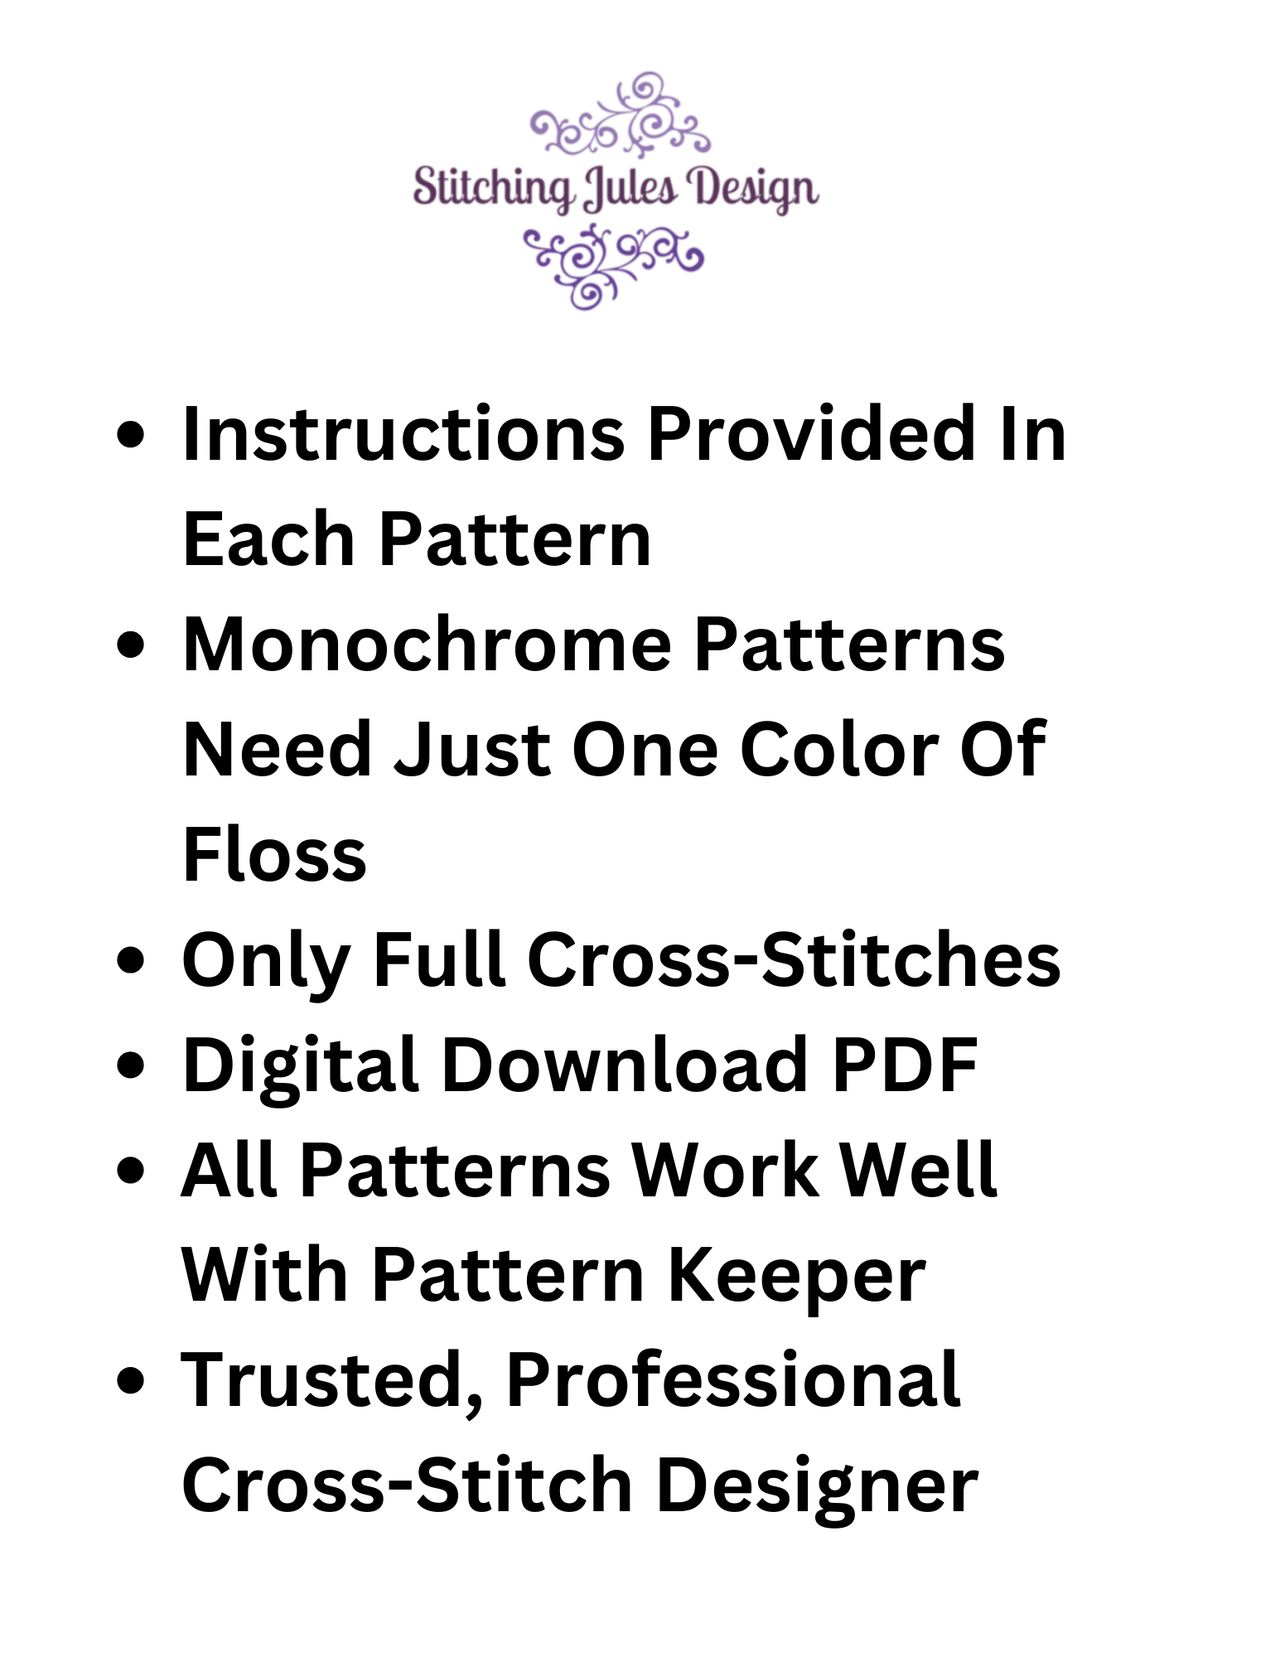 Stitching Jules Design Cross Stitch Pattern Gothic House Counted Cross Stitch Pattern | Monochrome Cross Stitch Pattern | Instant PDF Download